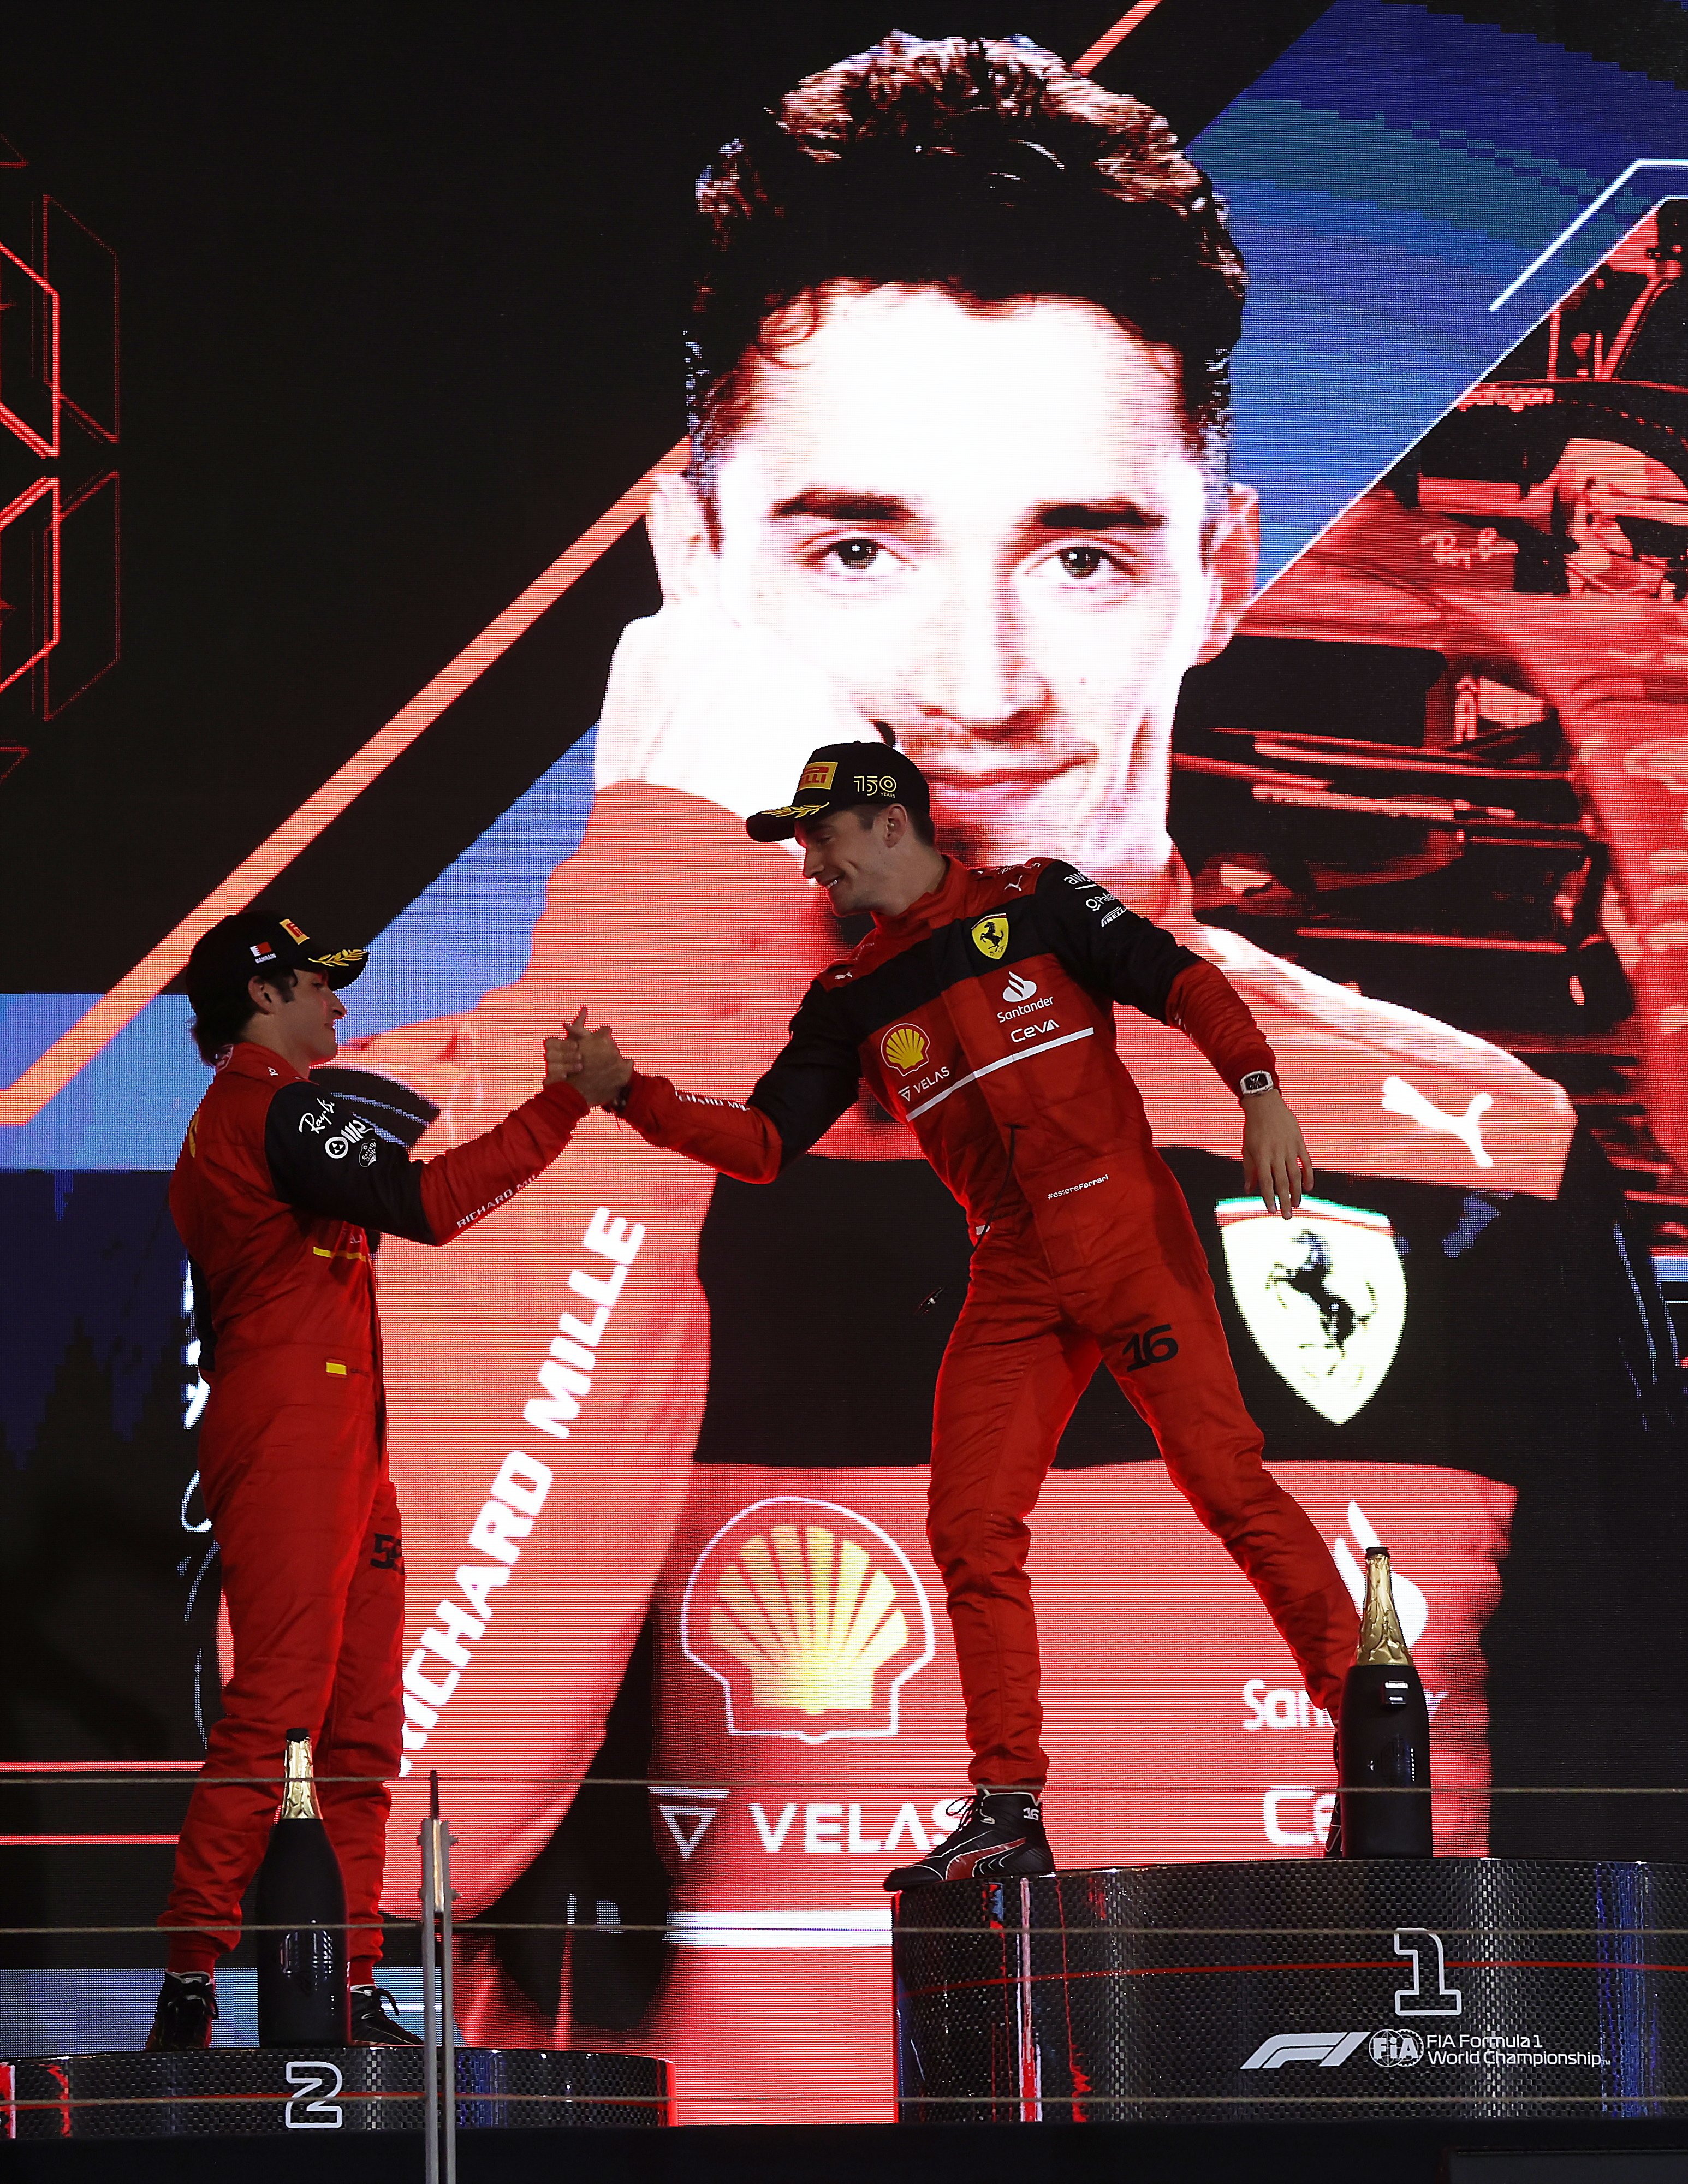 Ferrari es un polvorín, la relación de Carlos Sainz con Leclerc, rota; celos